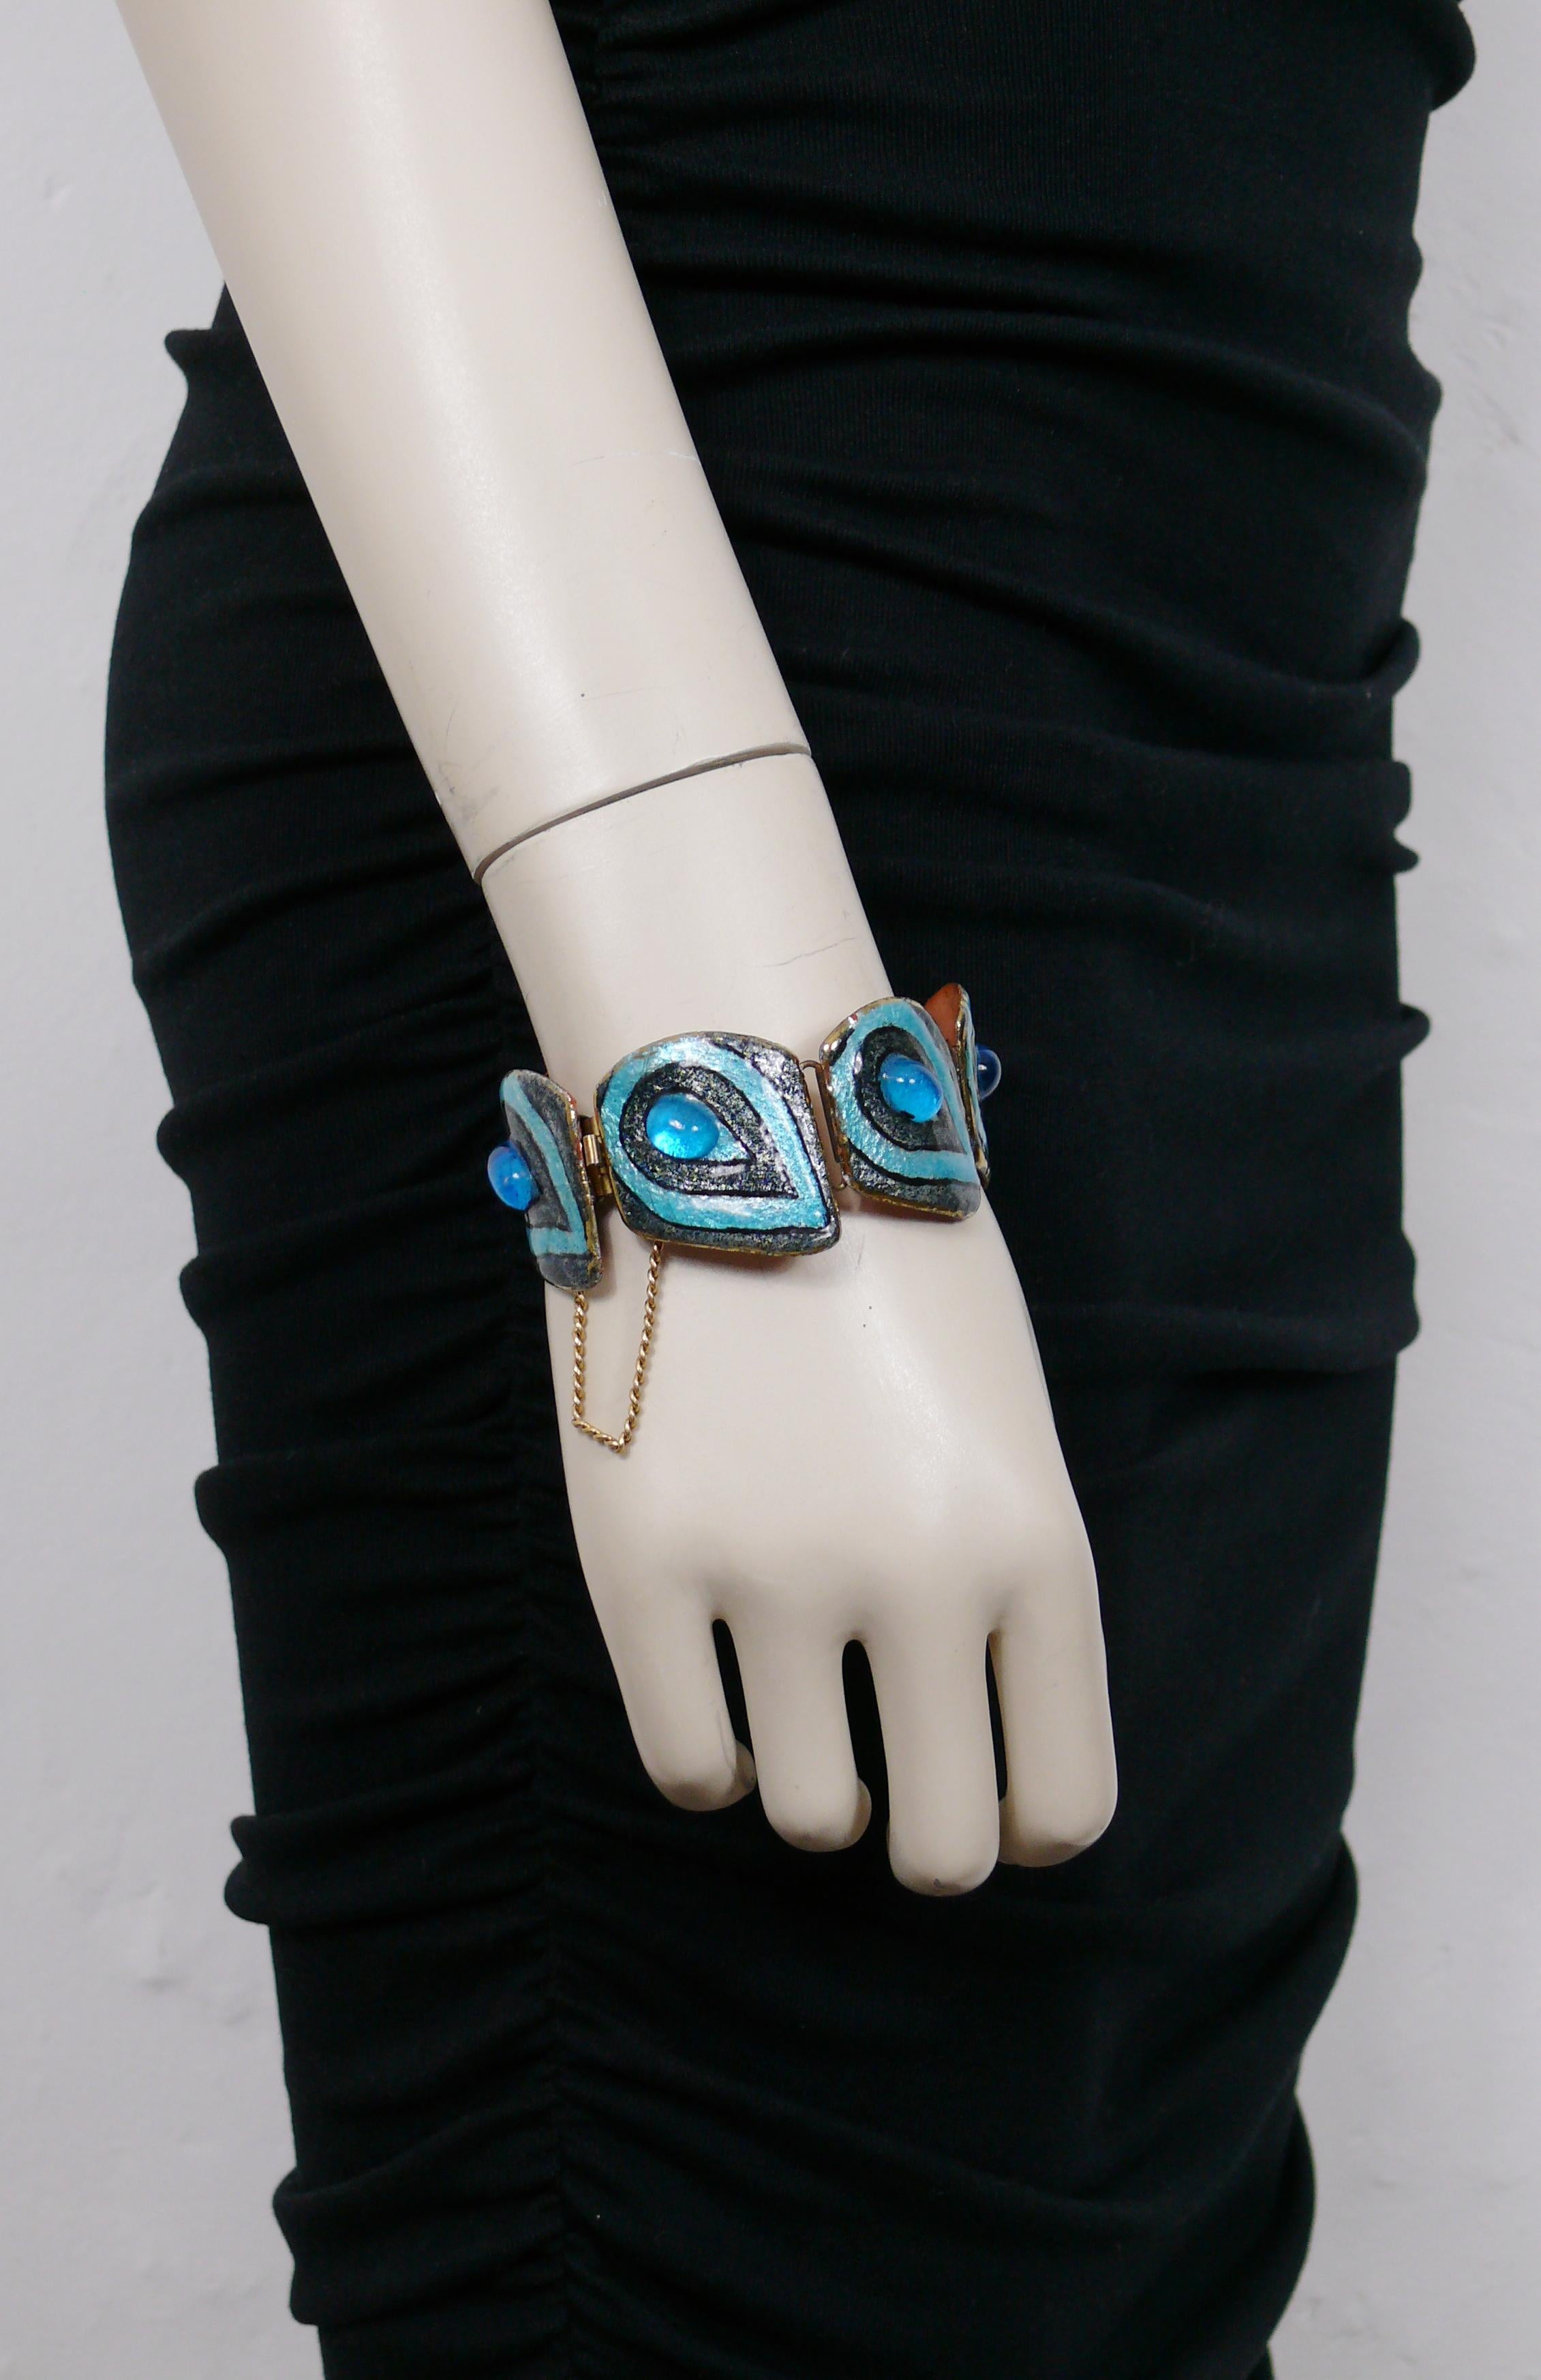 ANDREE BAZOT Vintage-Armband mit blau und schwarz emaillierten Gliedern, die mit einem blauen Glascabochon verziert sind.

Gezeichnet ANDREE BAZOT.

Ungefähre Maße: Umfang ca. 19,48 cm (7,67 Zoll) / Breite der Glieder max. 3.2 cm (1,26